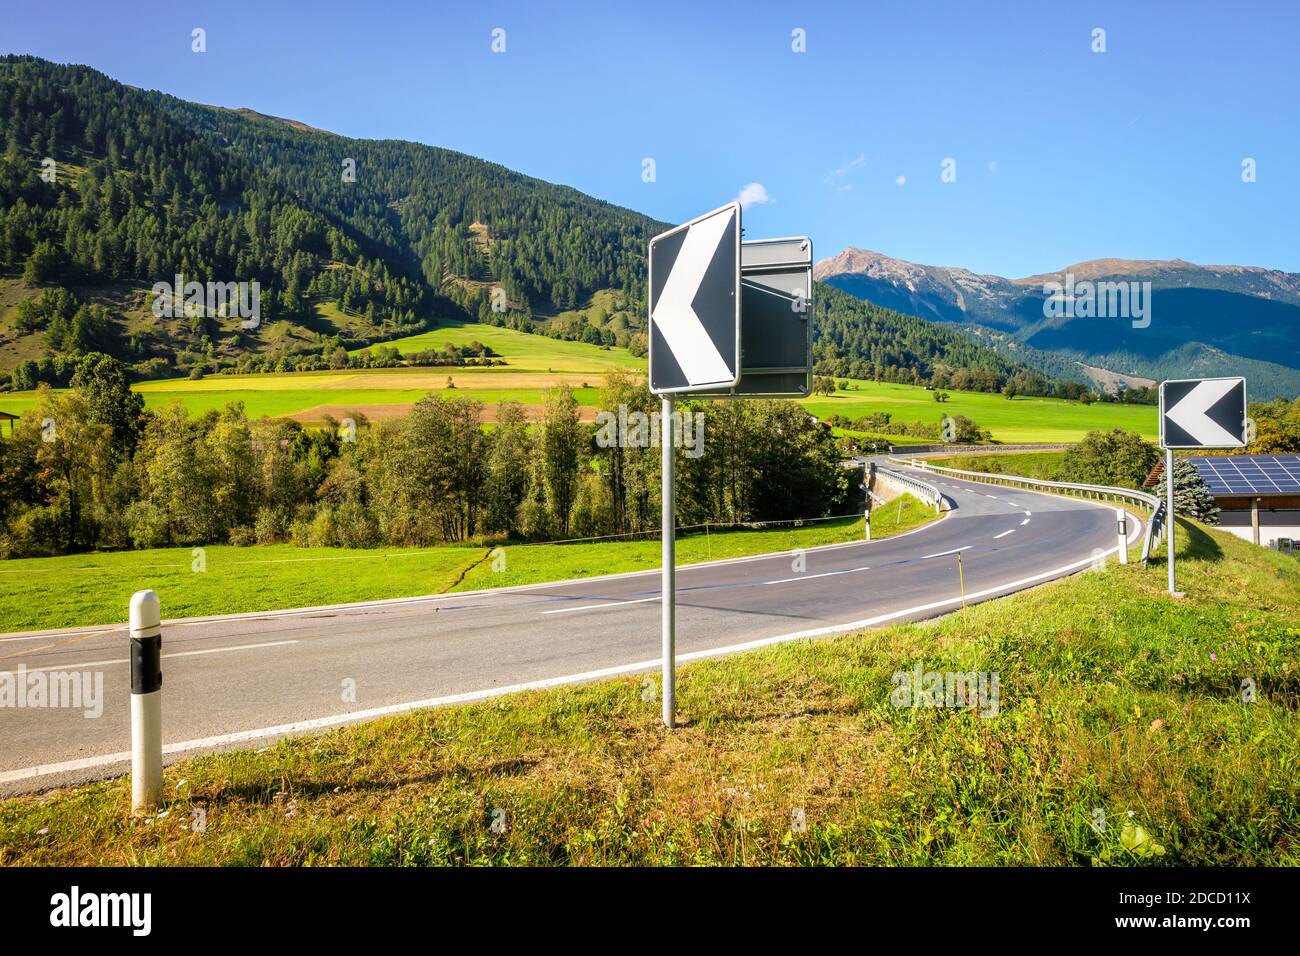 Straßenschilder weisen auf eine Biegung an einer Brücke über den Fluss Rom im Schweizer Val Müstair hin. Die Straße führt zum Dorf Müstair und dann zur italienischen Grenze. Stockfoto